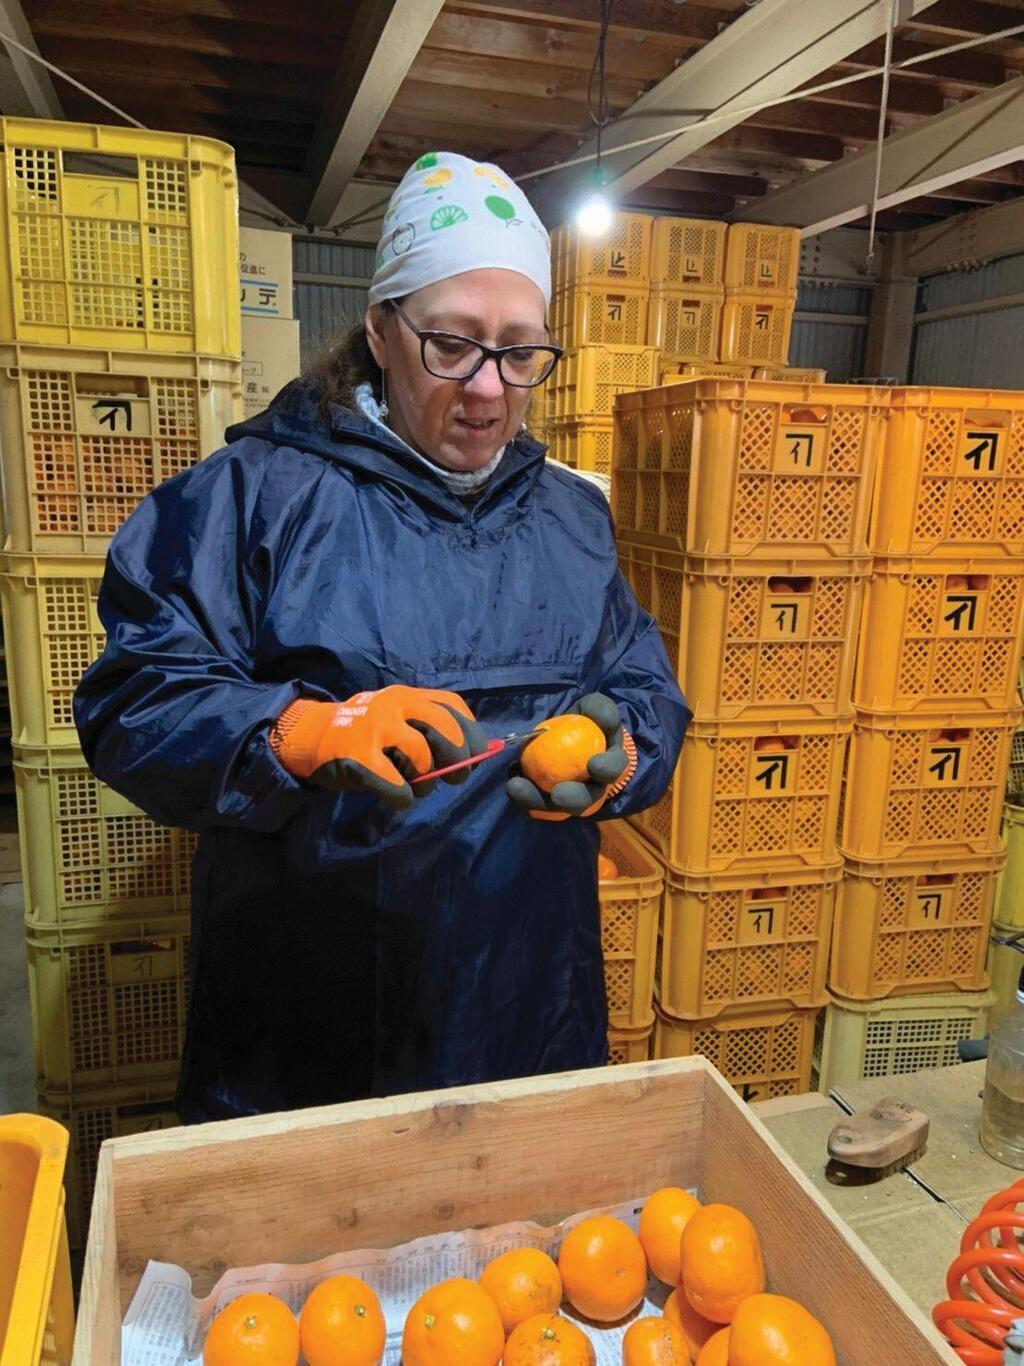 ריקי יעקבי מתנדבת בחווה חקלאית ביפן